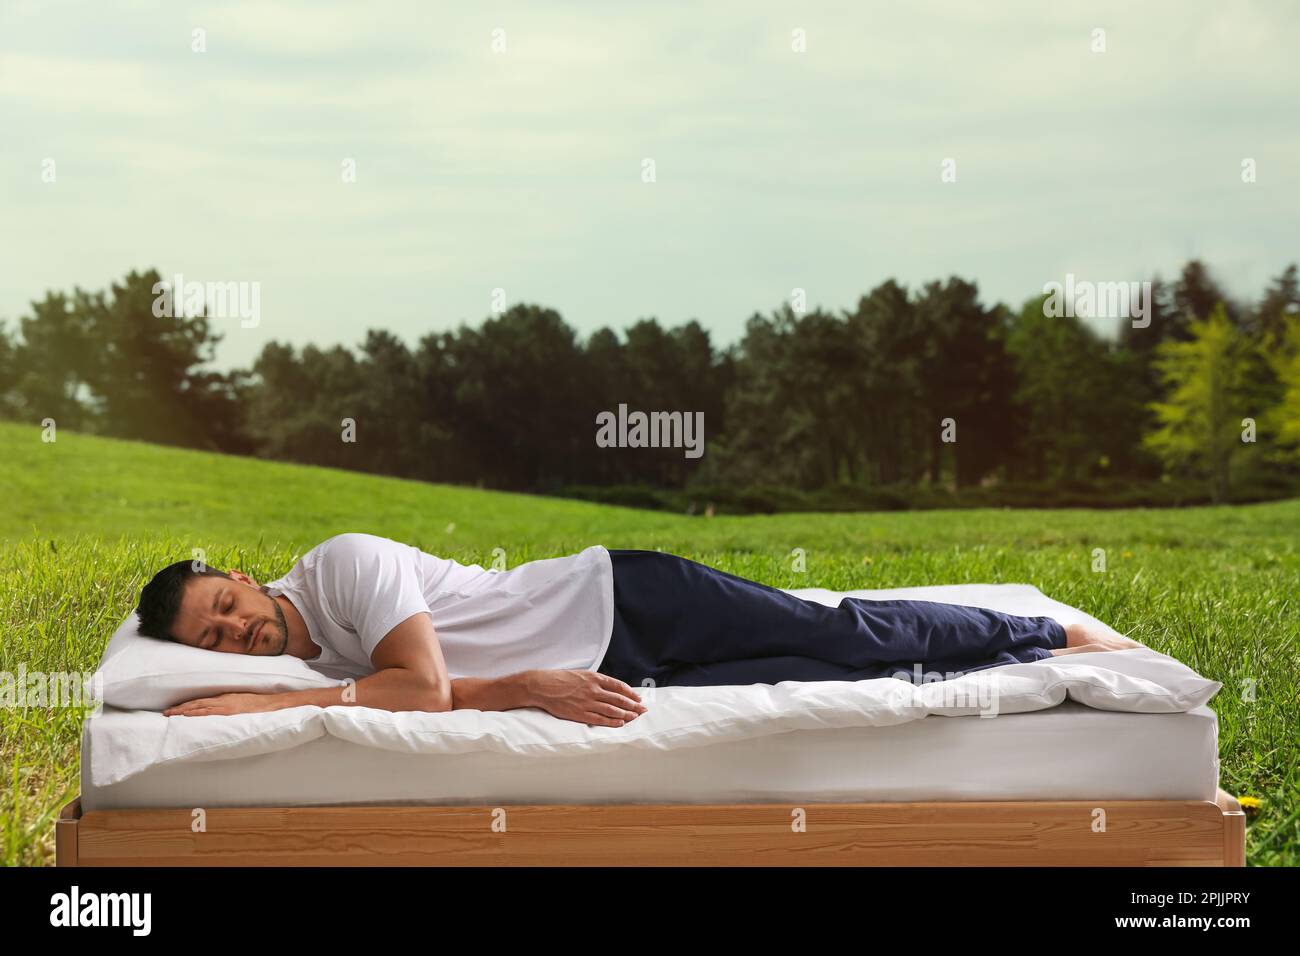 Mann schläft auf dem Bett und wunderschöner Blick auf den grünen Rasen im Hintergrund. Gut schlafen - gesund bleiben Stockfoto